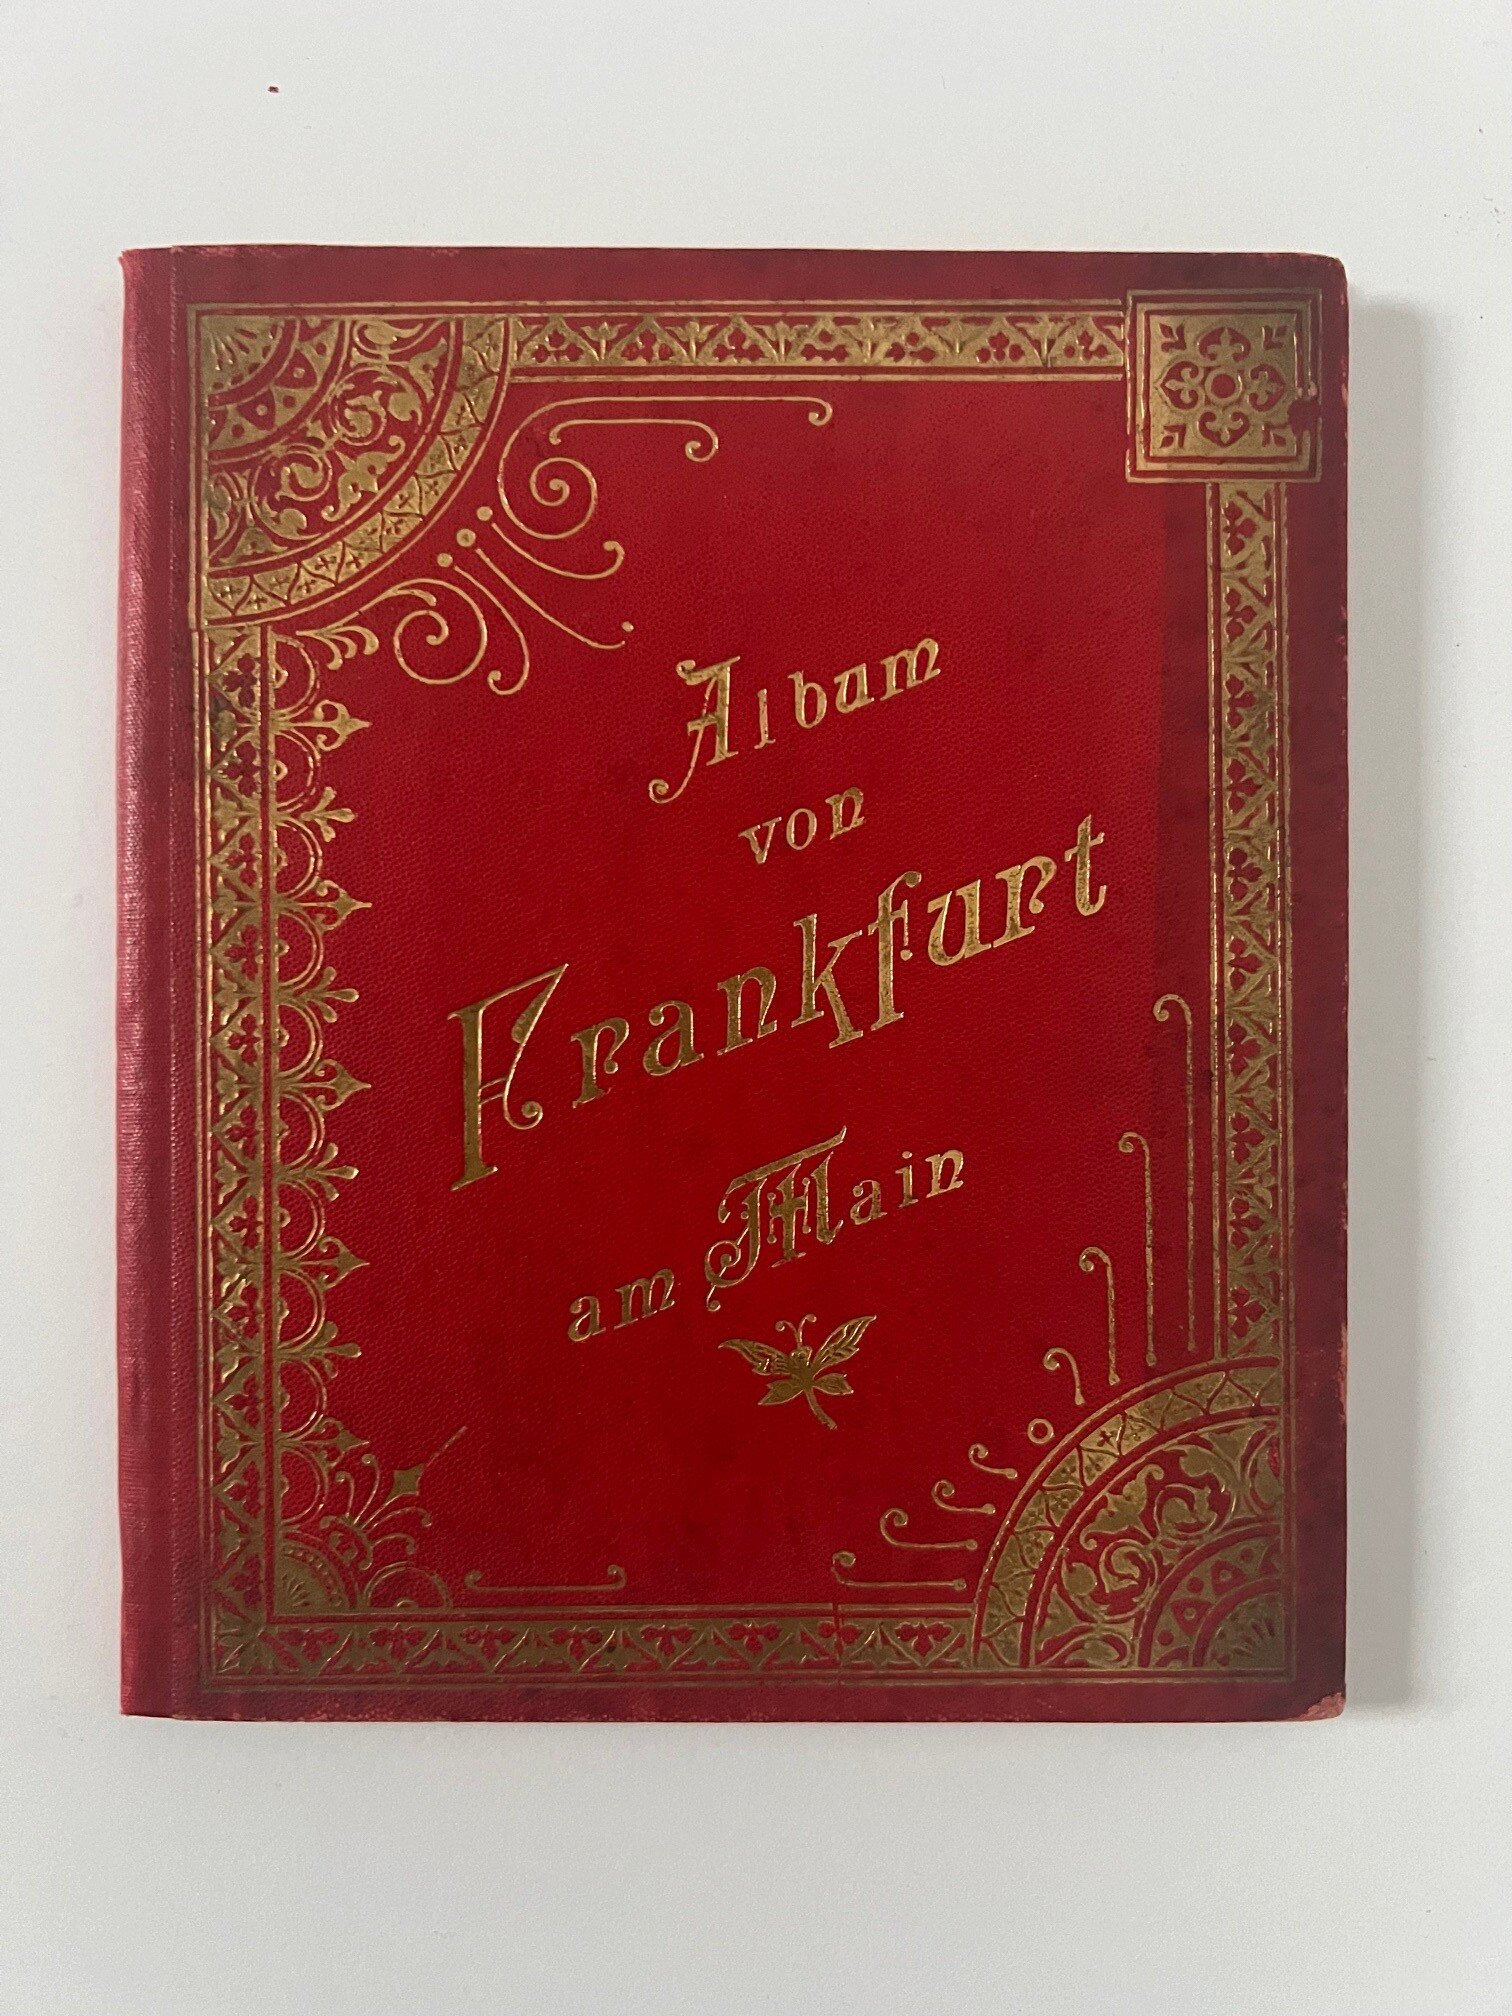 Verlag Gerhard Blümlein & Co, Album von Frankfurt am Main, 30 Lithographien als Leporello, ca. 1896. (Taunus-Rhein-Main - Regionalgeschichtliche Sammlung Dr. Stefan Naas CC BY-NC-SA)